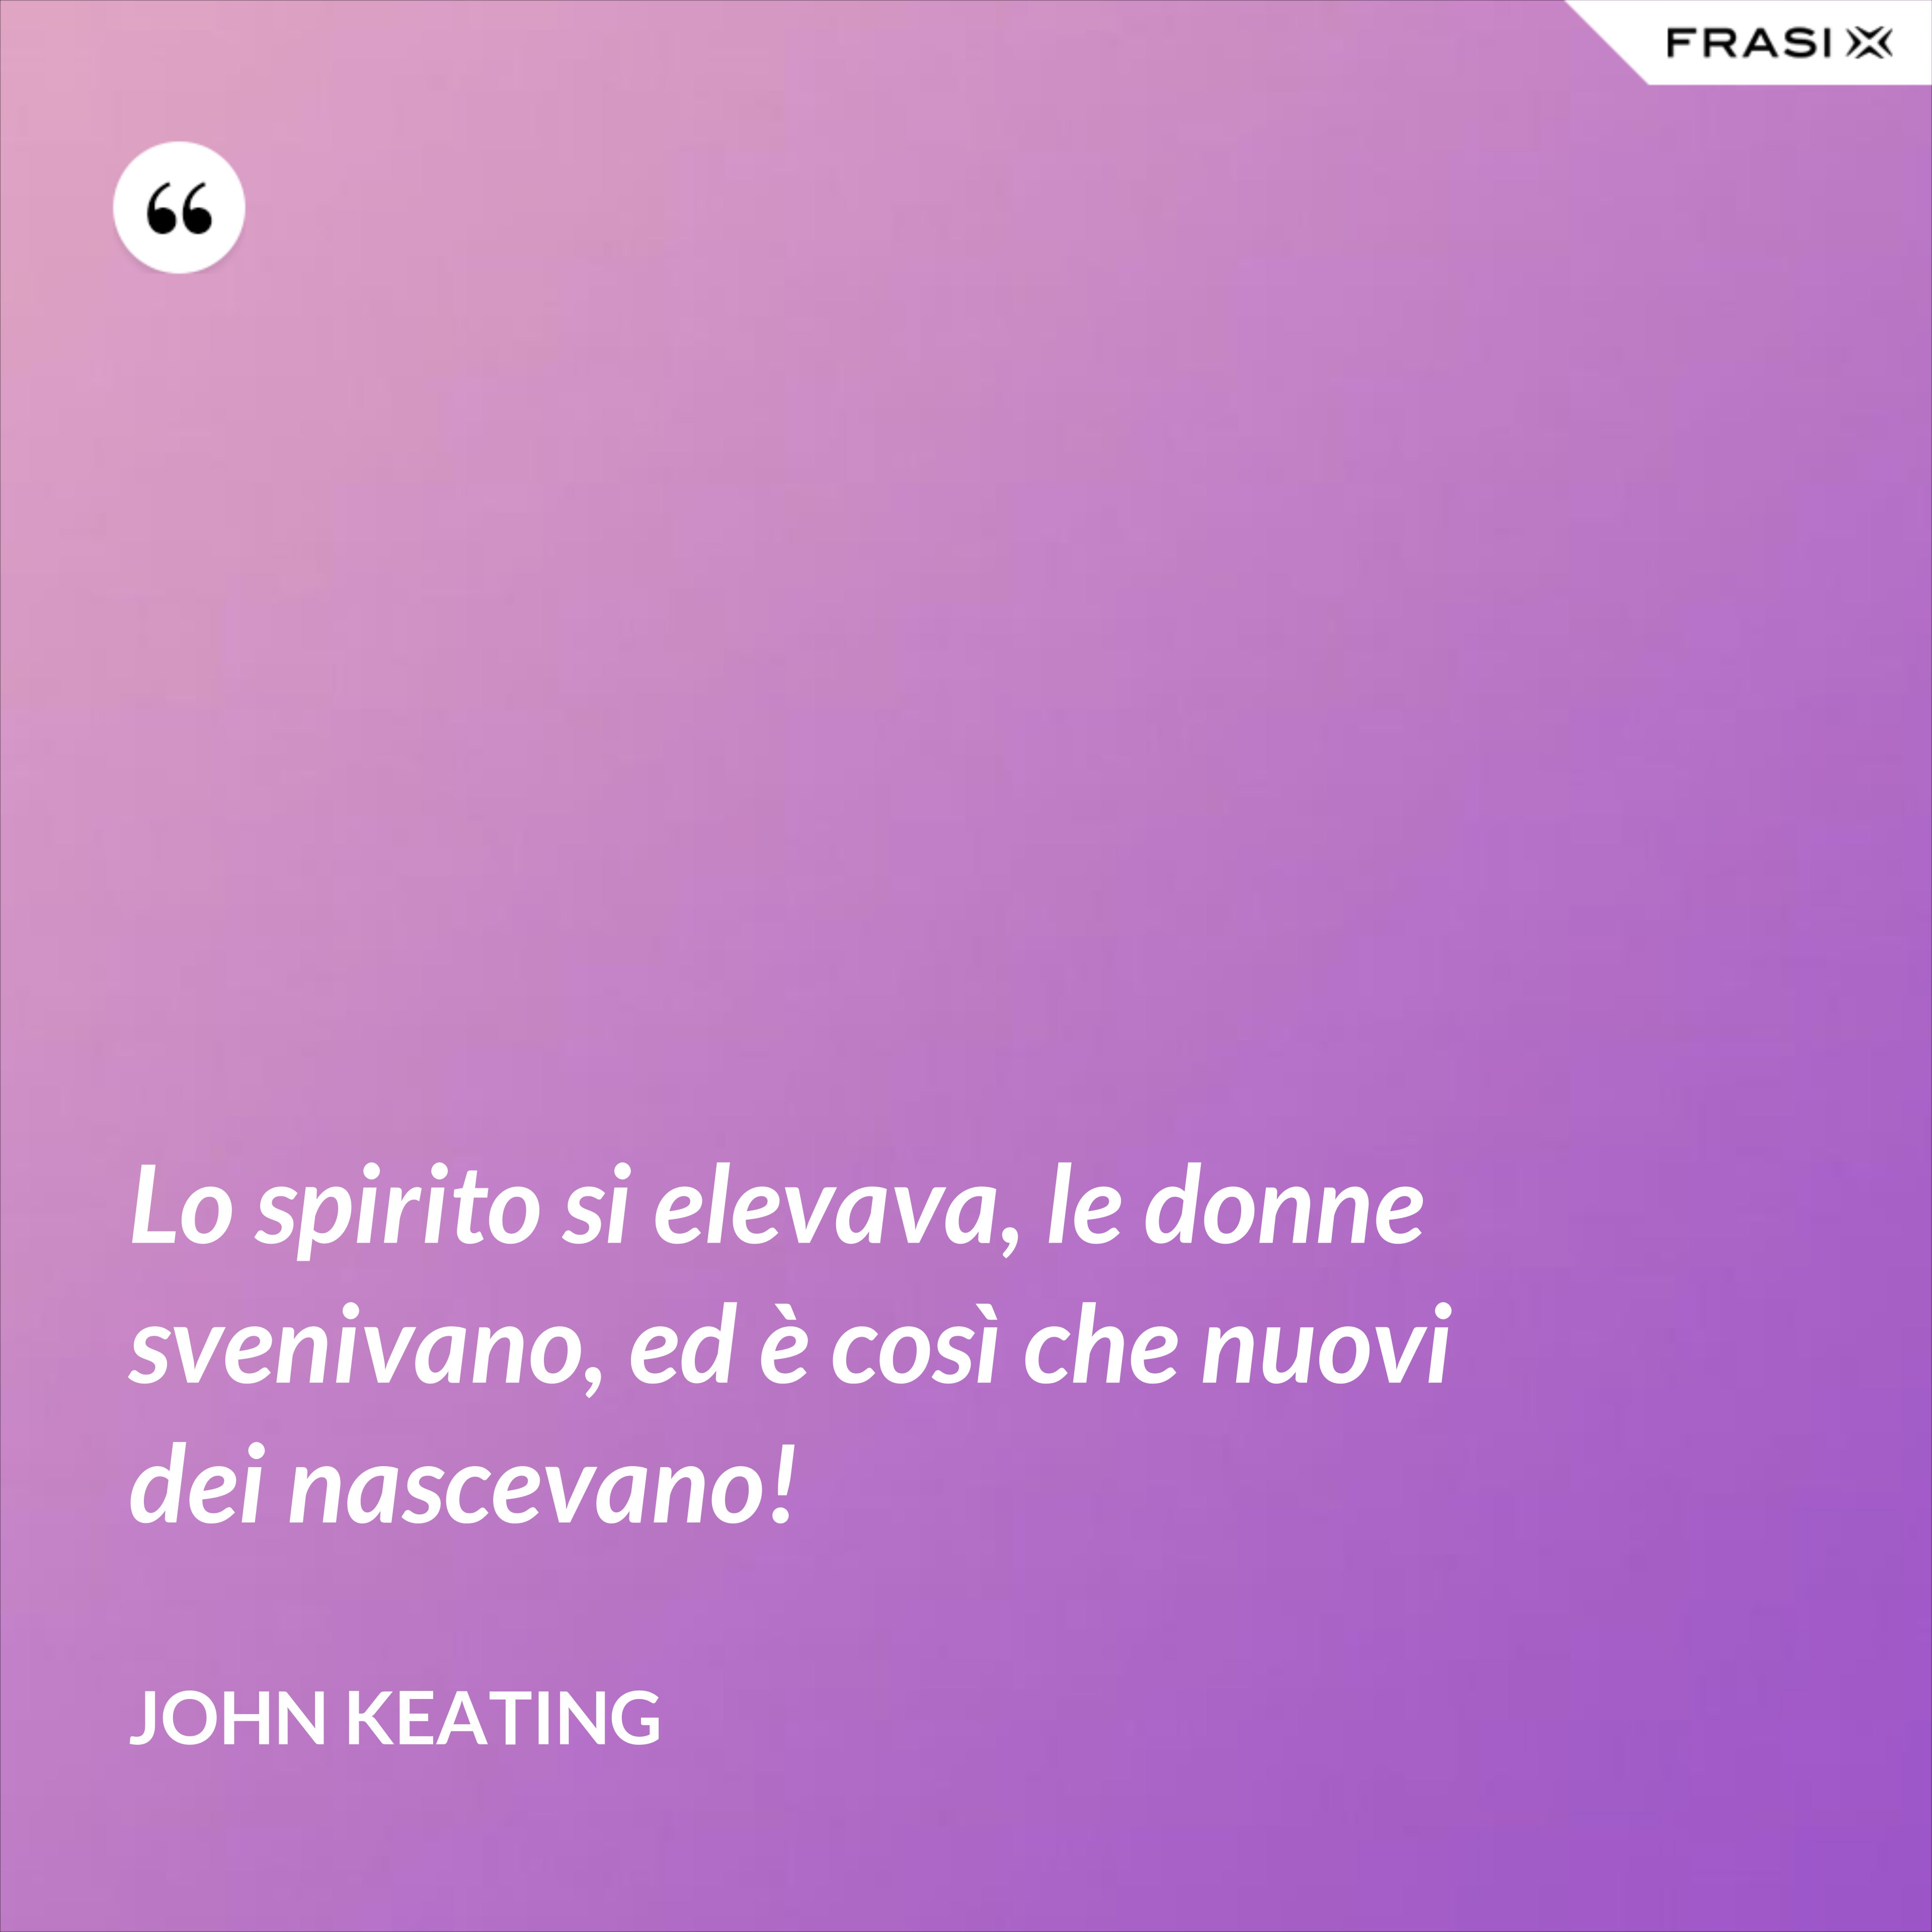 Lo spirito si elevava, le donne svenivano, ed è così che nuovi dei nascevano! - John Keating